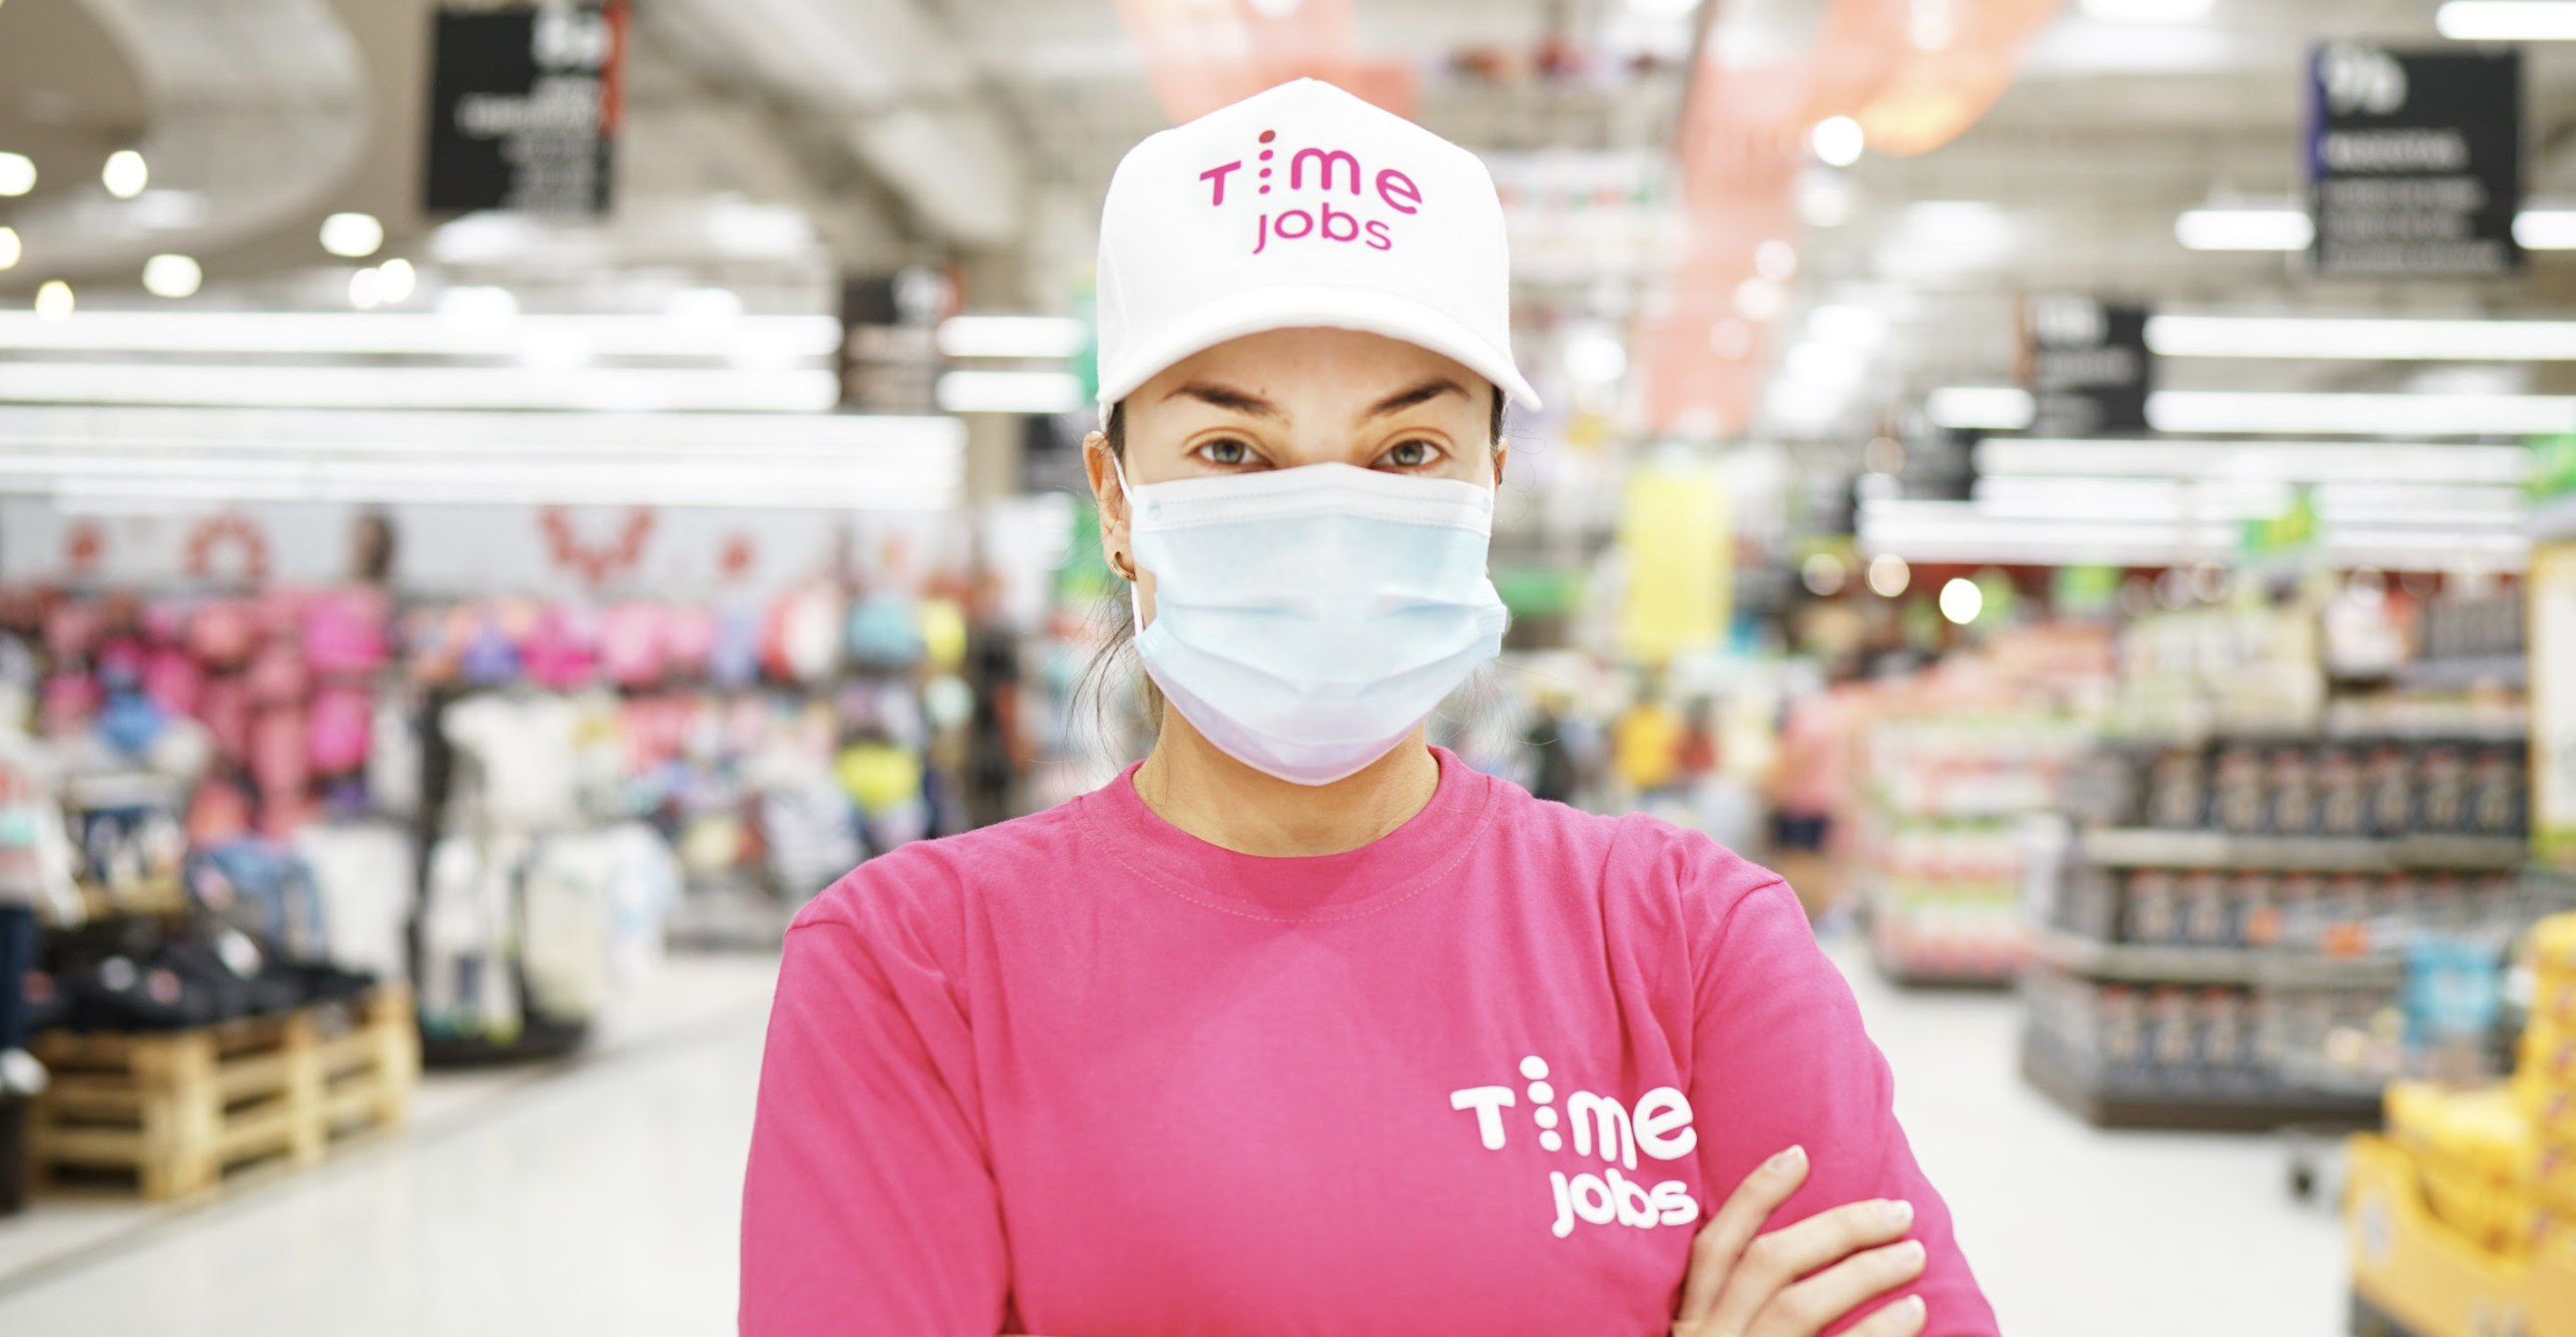 Timejobs.work irrumpe en el mercado latinoamericano